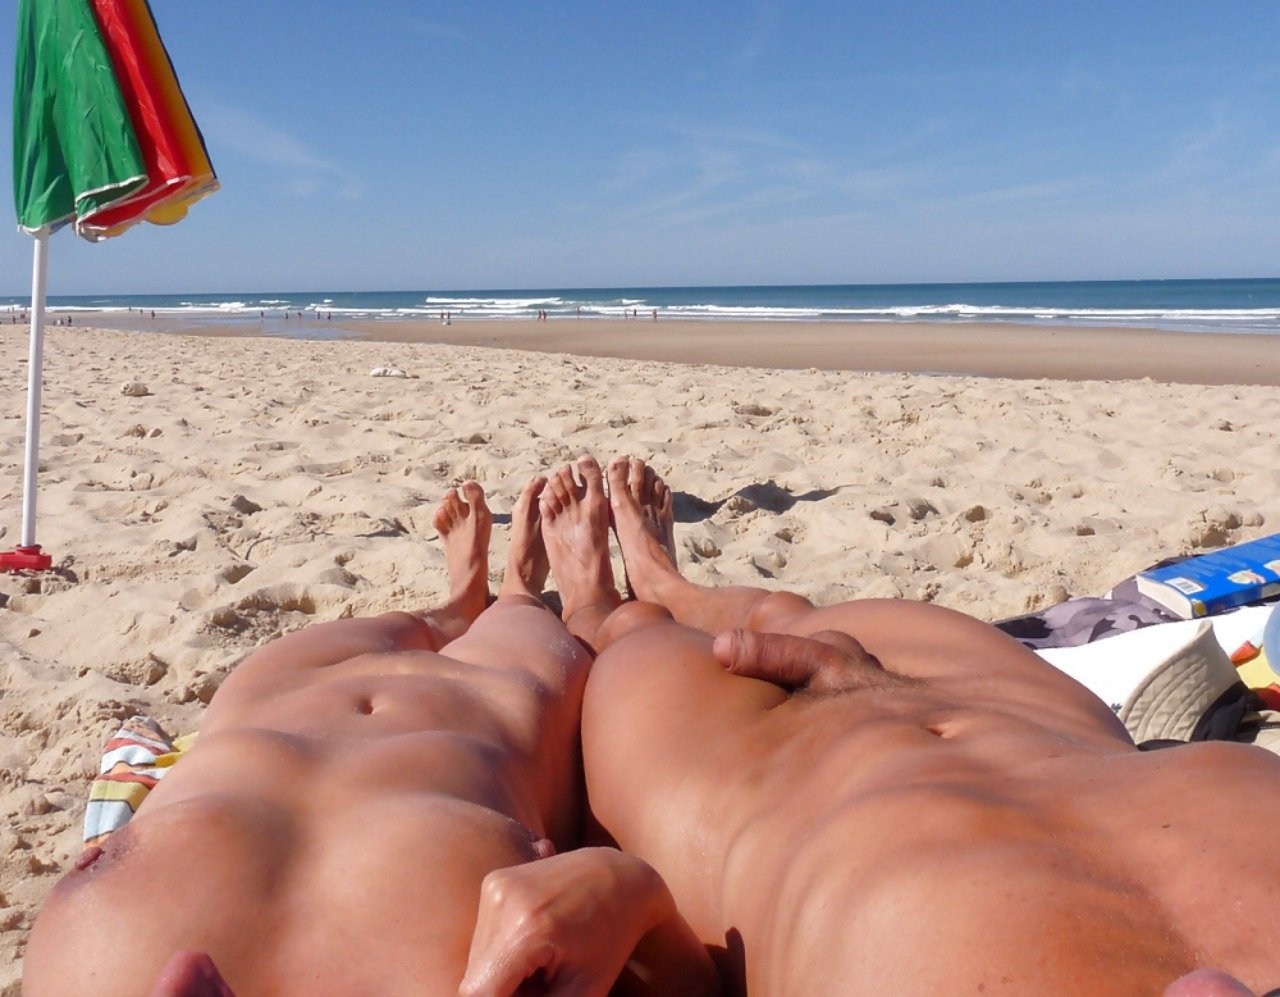 Молодожены загорают голышом на пляже - порно фото